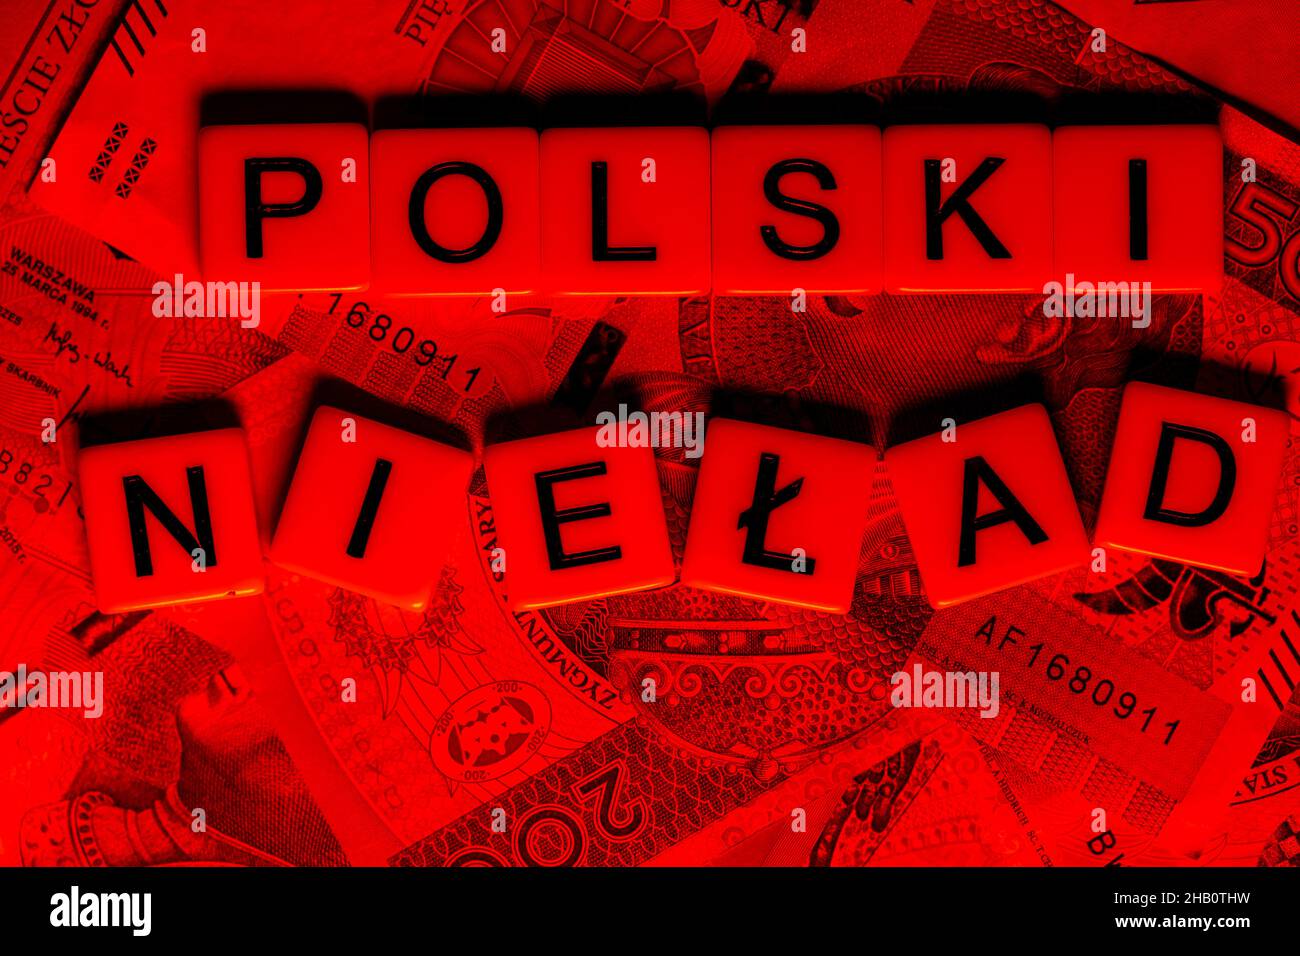 La frase 'Polski Ład' tradotta come 'Ordine Polacco' e molte banconote polacche. Nuove norme fiscali in Polonia. Foto scattata con luce rossa aggressiva. Foto Stock